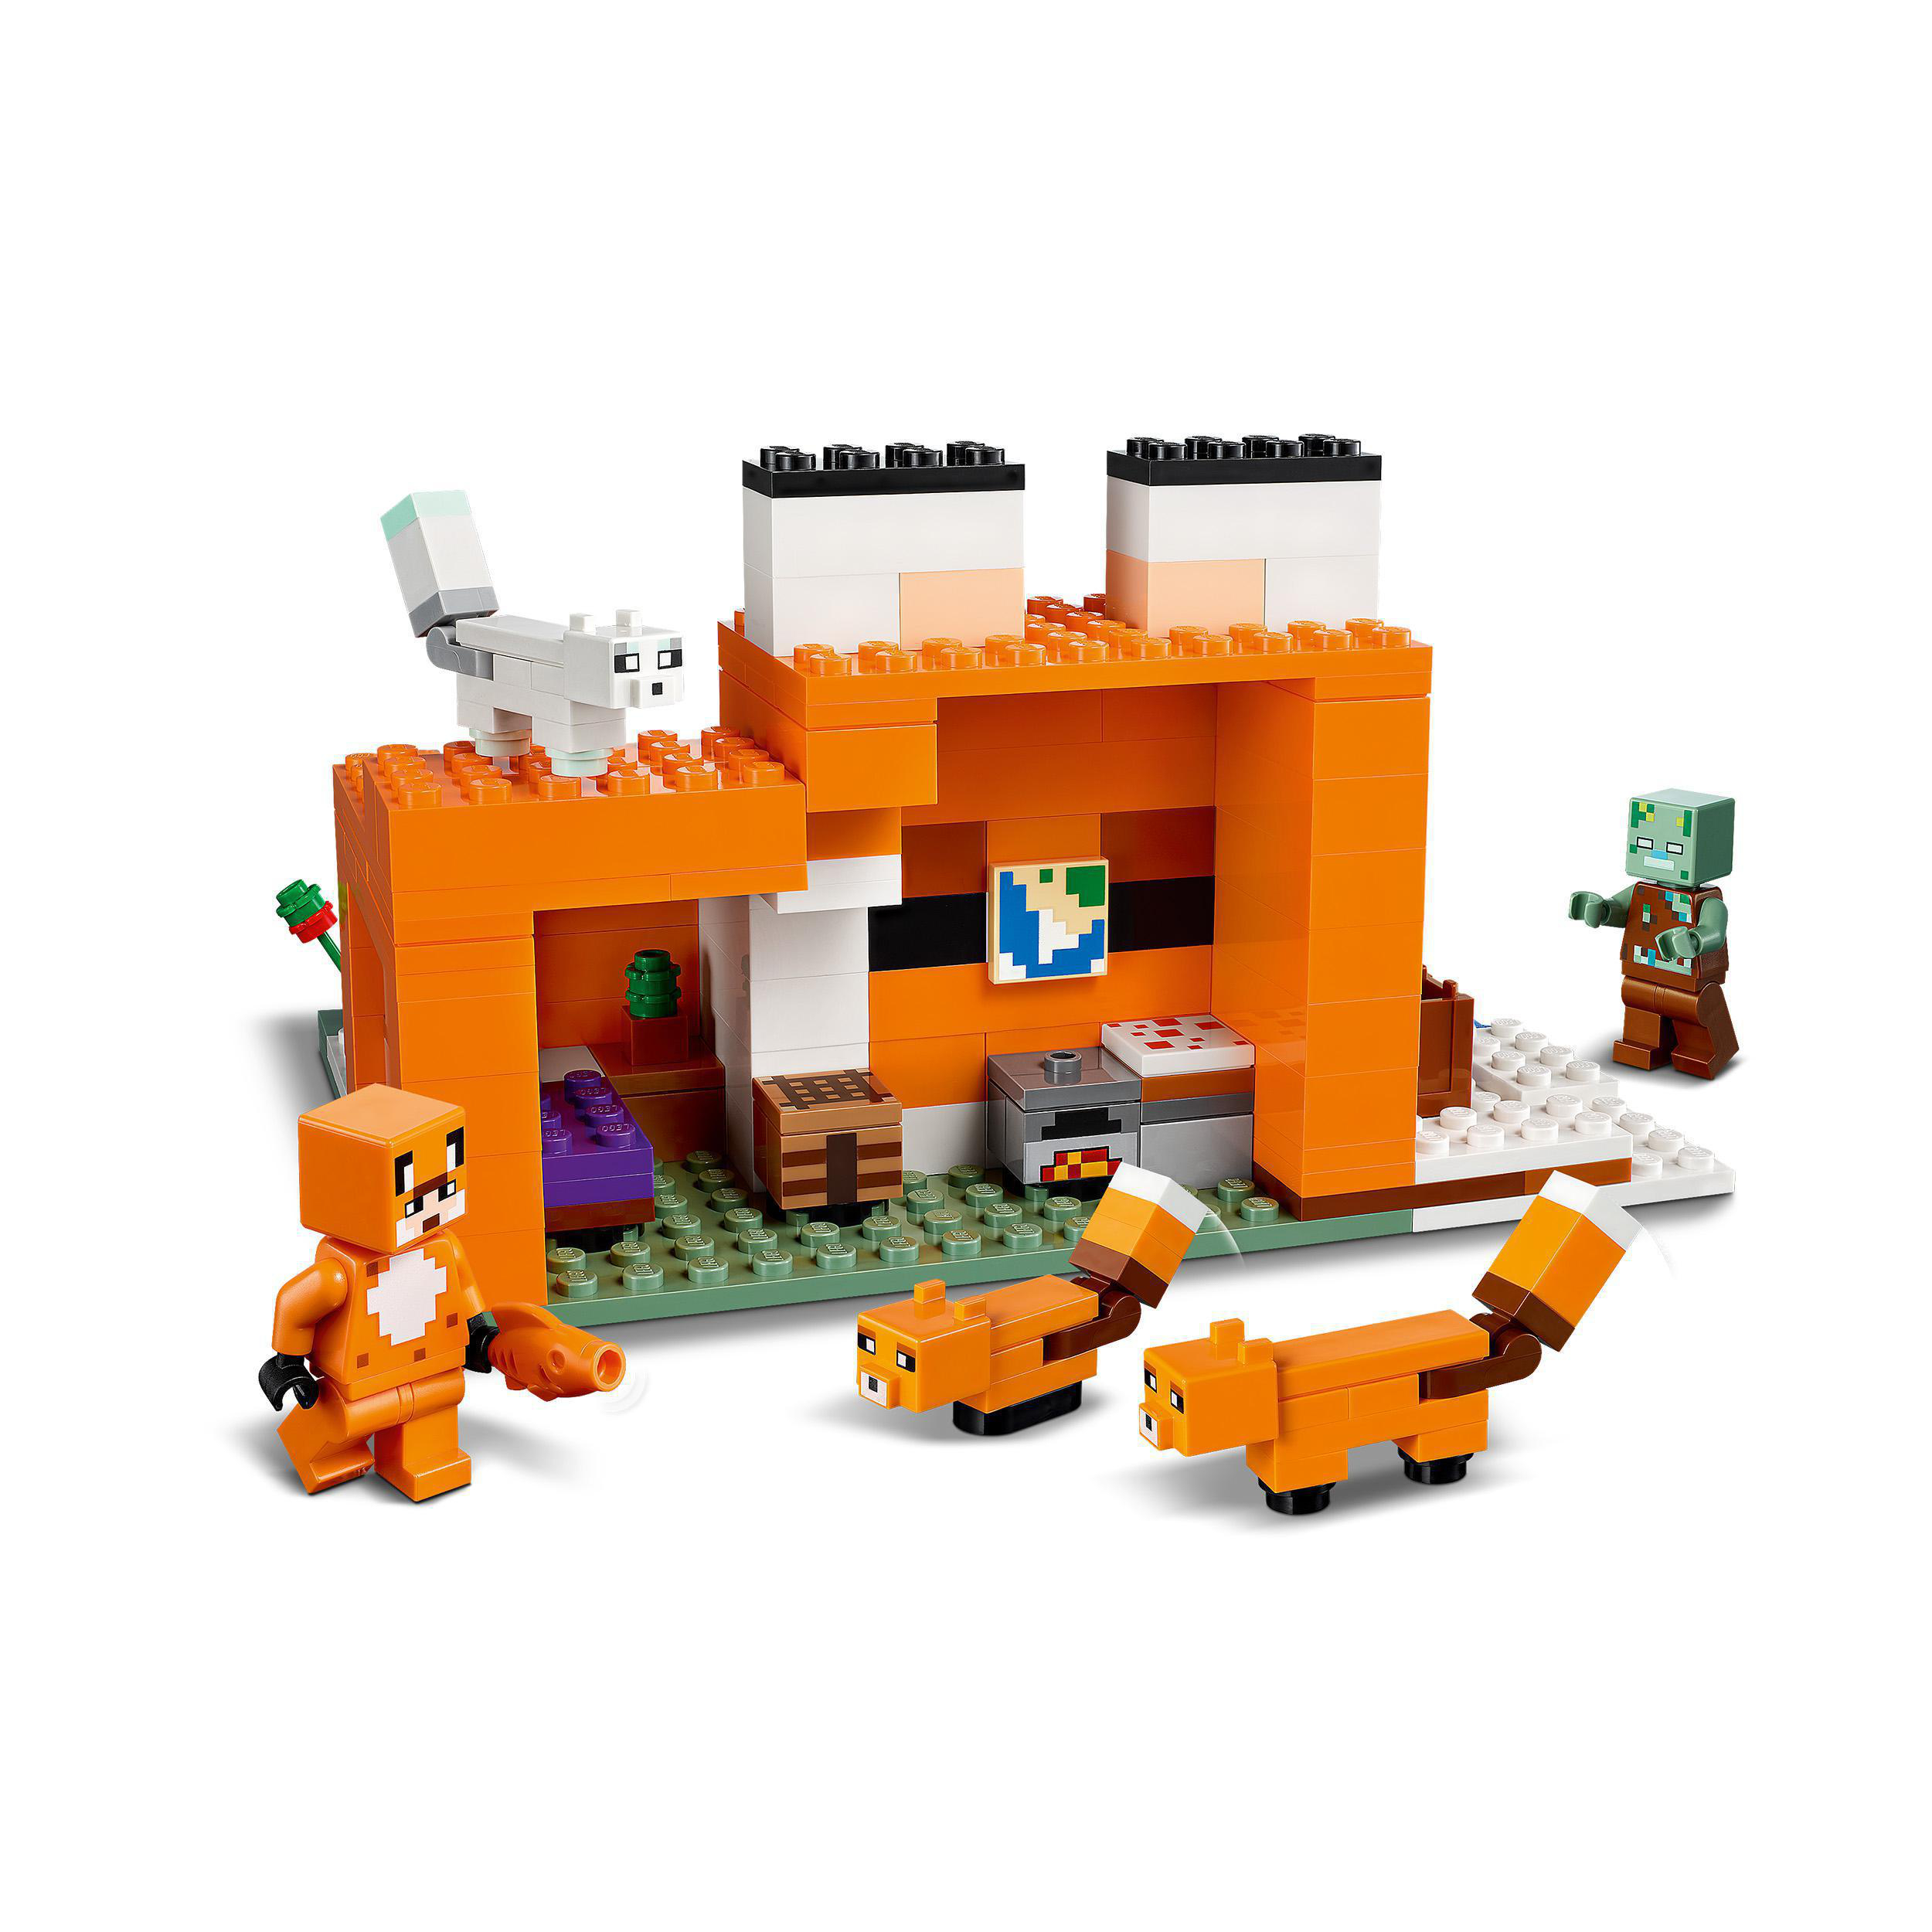 Bausatz, LEGO 21178 Die Mehrfarbig Minecraft Fuchs-Lodge